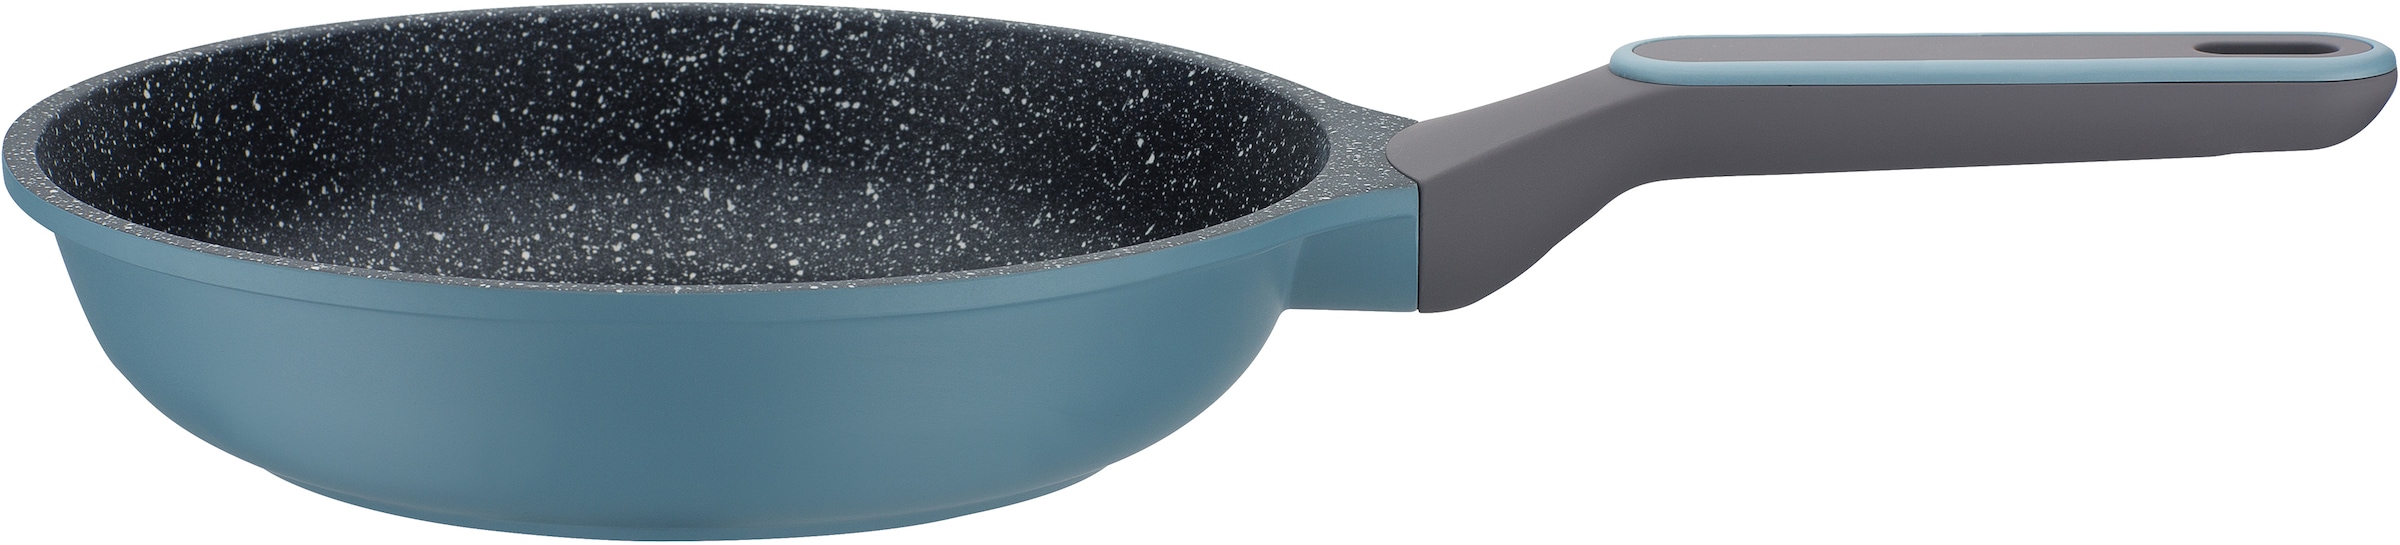 GSW Topf-Set »Blue Granit«, Aluminiumguss, (Set, 7 tlg., Kochtopf 20/24 cm, 1 Stielkasserolle 16 cm, 1 Bratpfanne 24 cm), Induktion